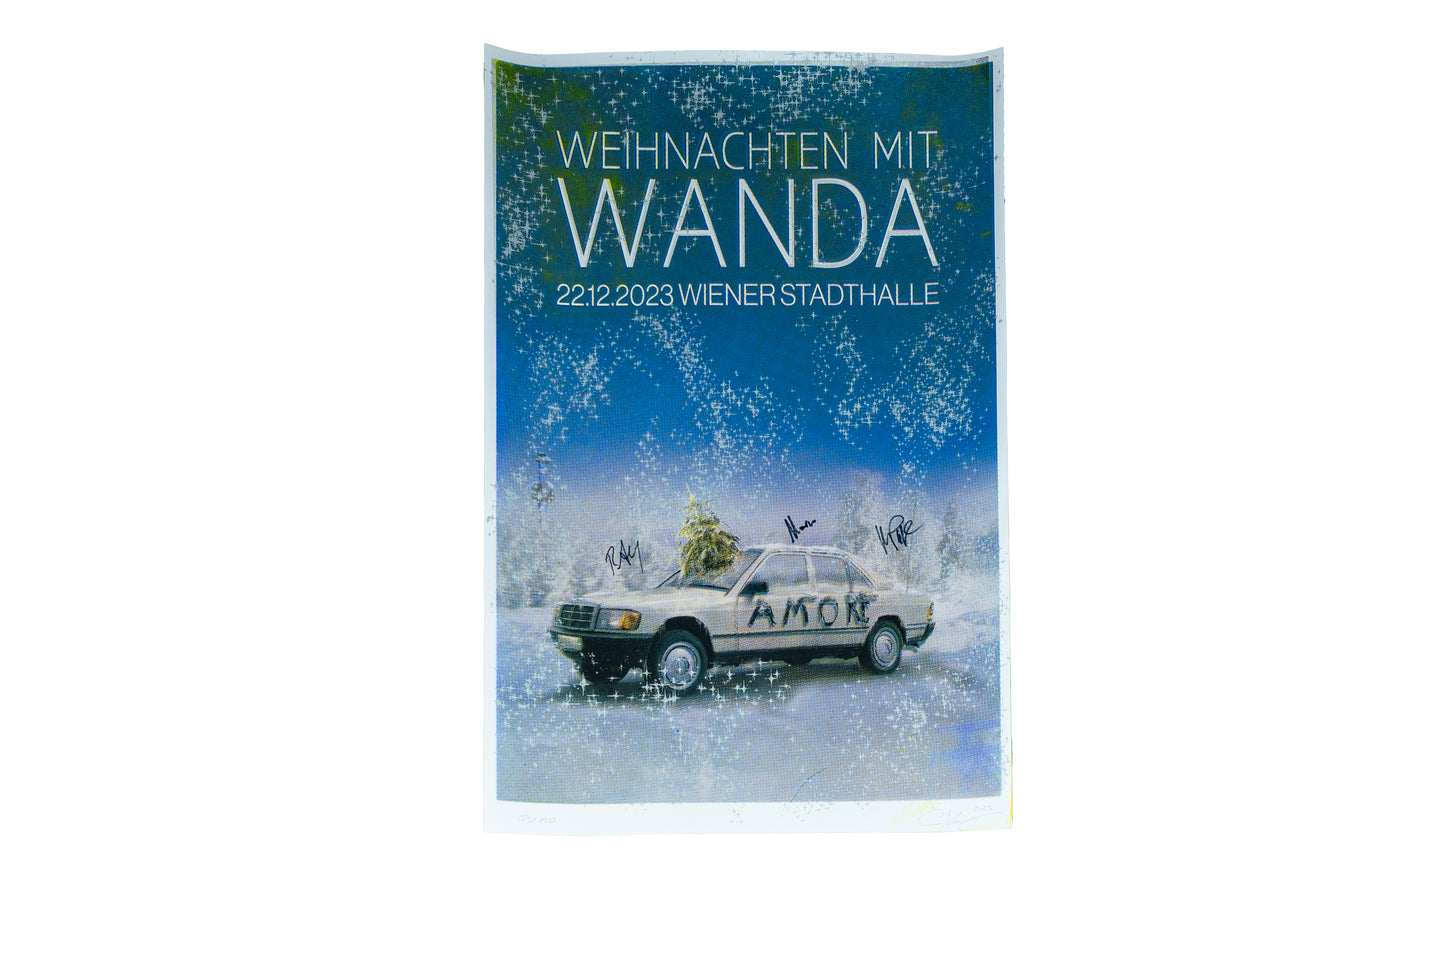 WANDA Siebdruckposter "Weihnachten mit Wanda"